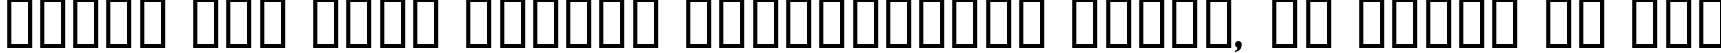 Пример написания шрифтом Albino текста на русском